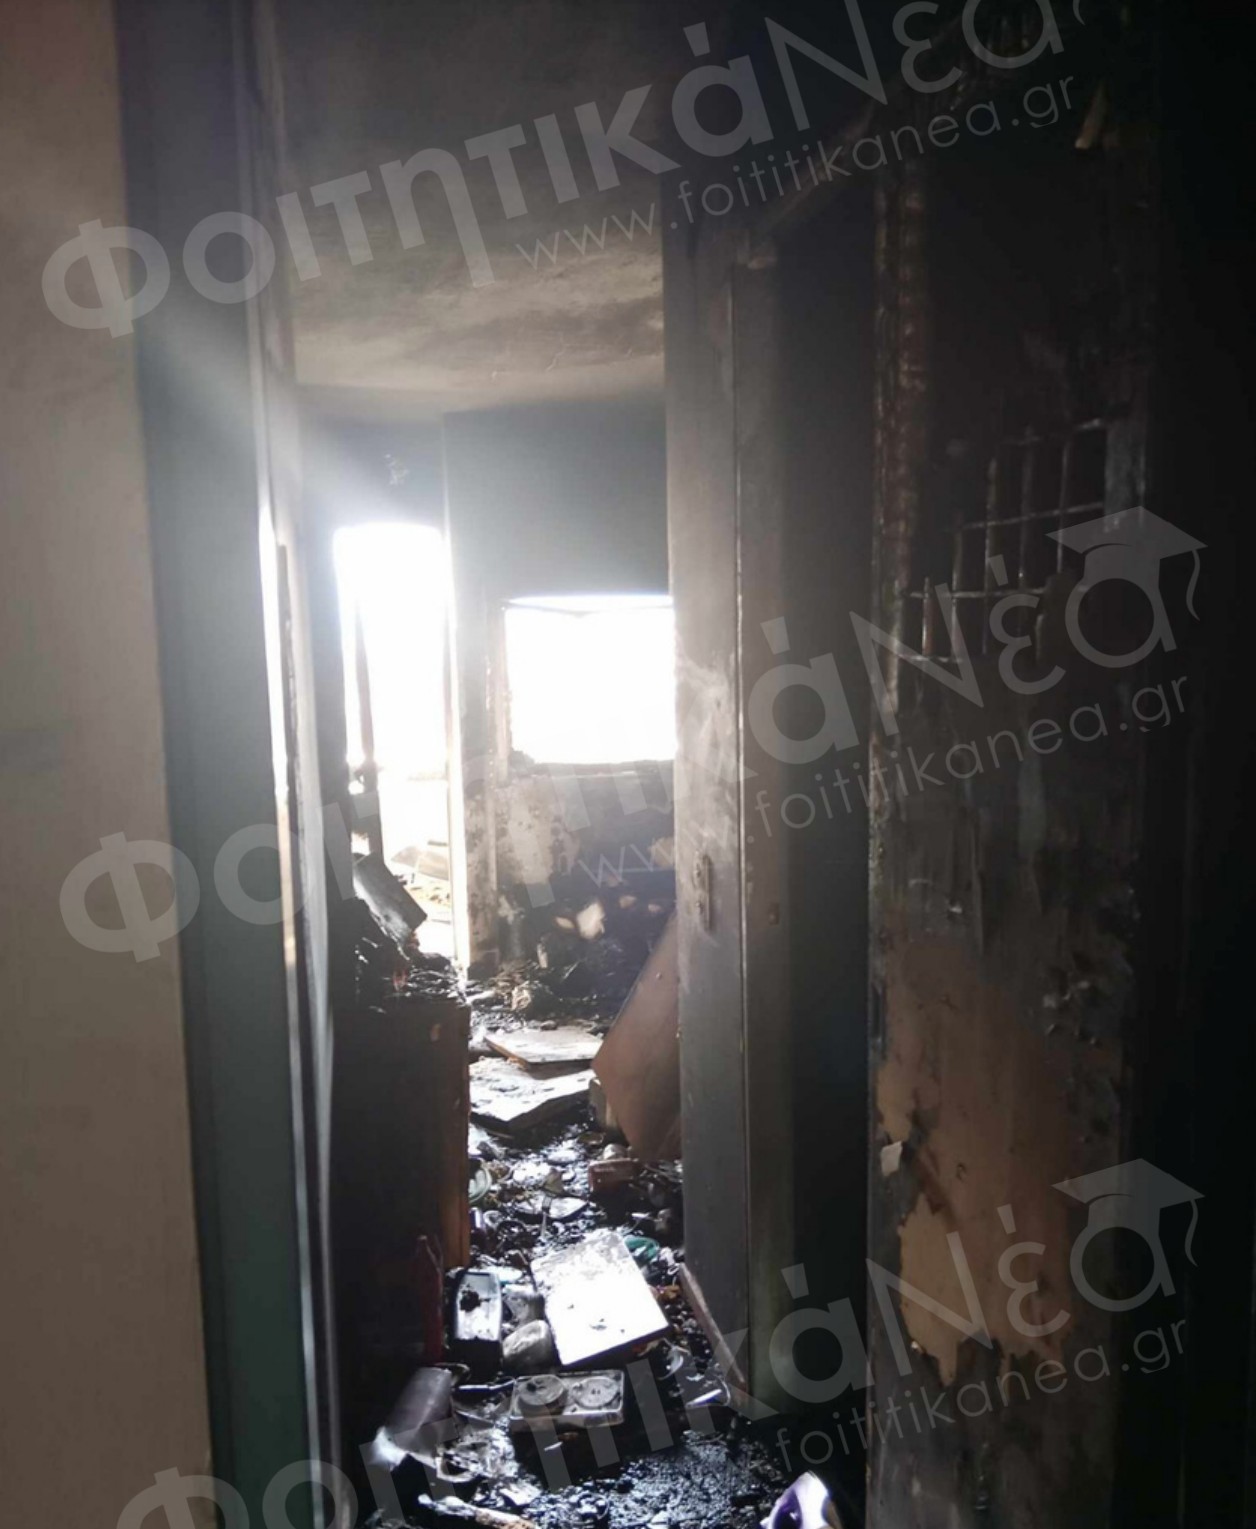 Ξέσπασε φωτιά σε Πανεπιστήμιο! Μία φοιτήτρια στο νοσοκομείο / Εκκενώθηκαν τα κτίρια